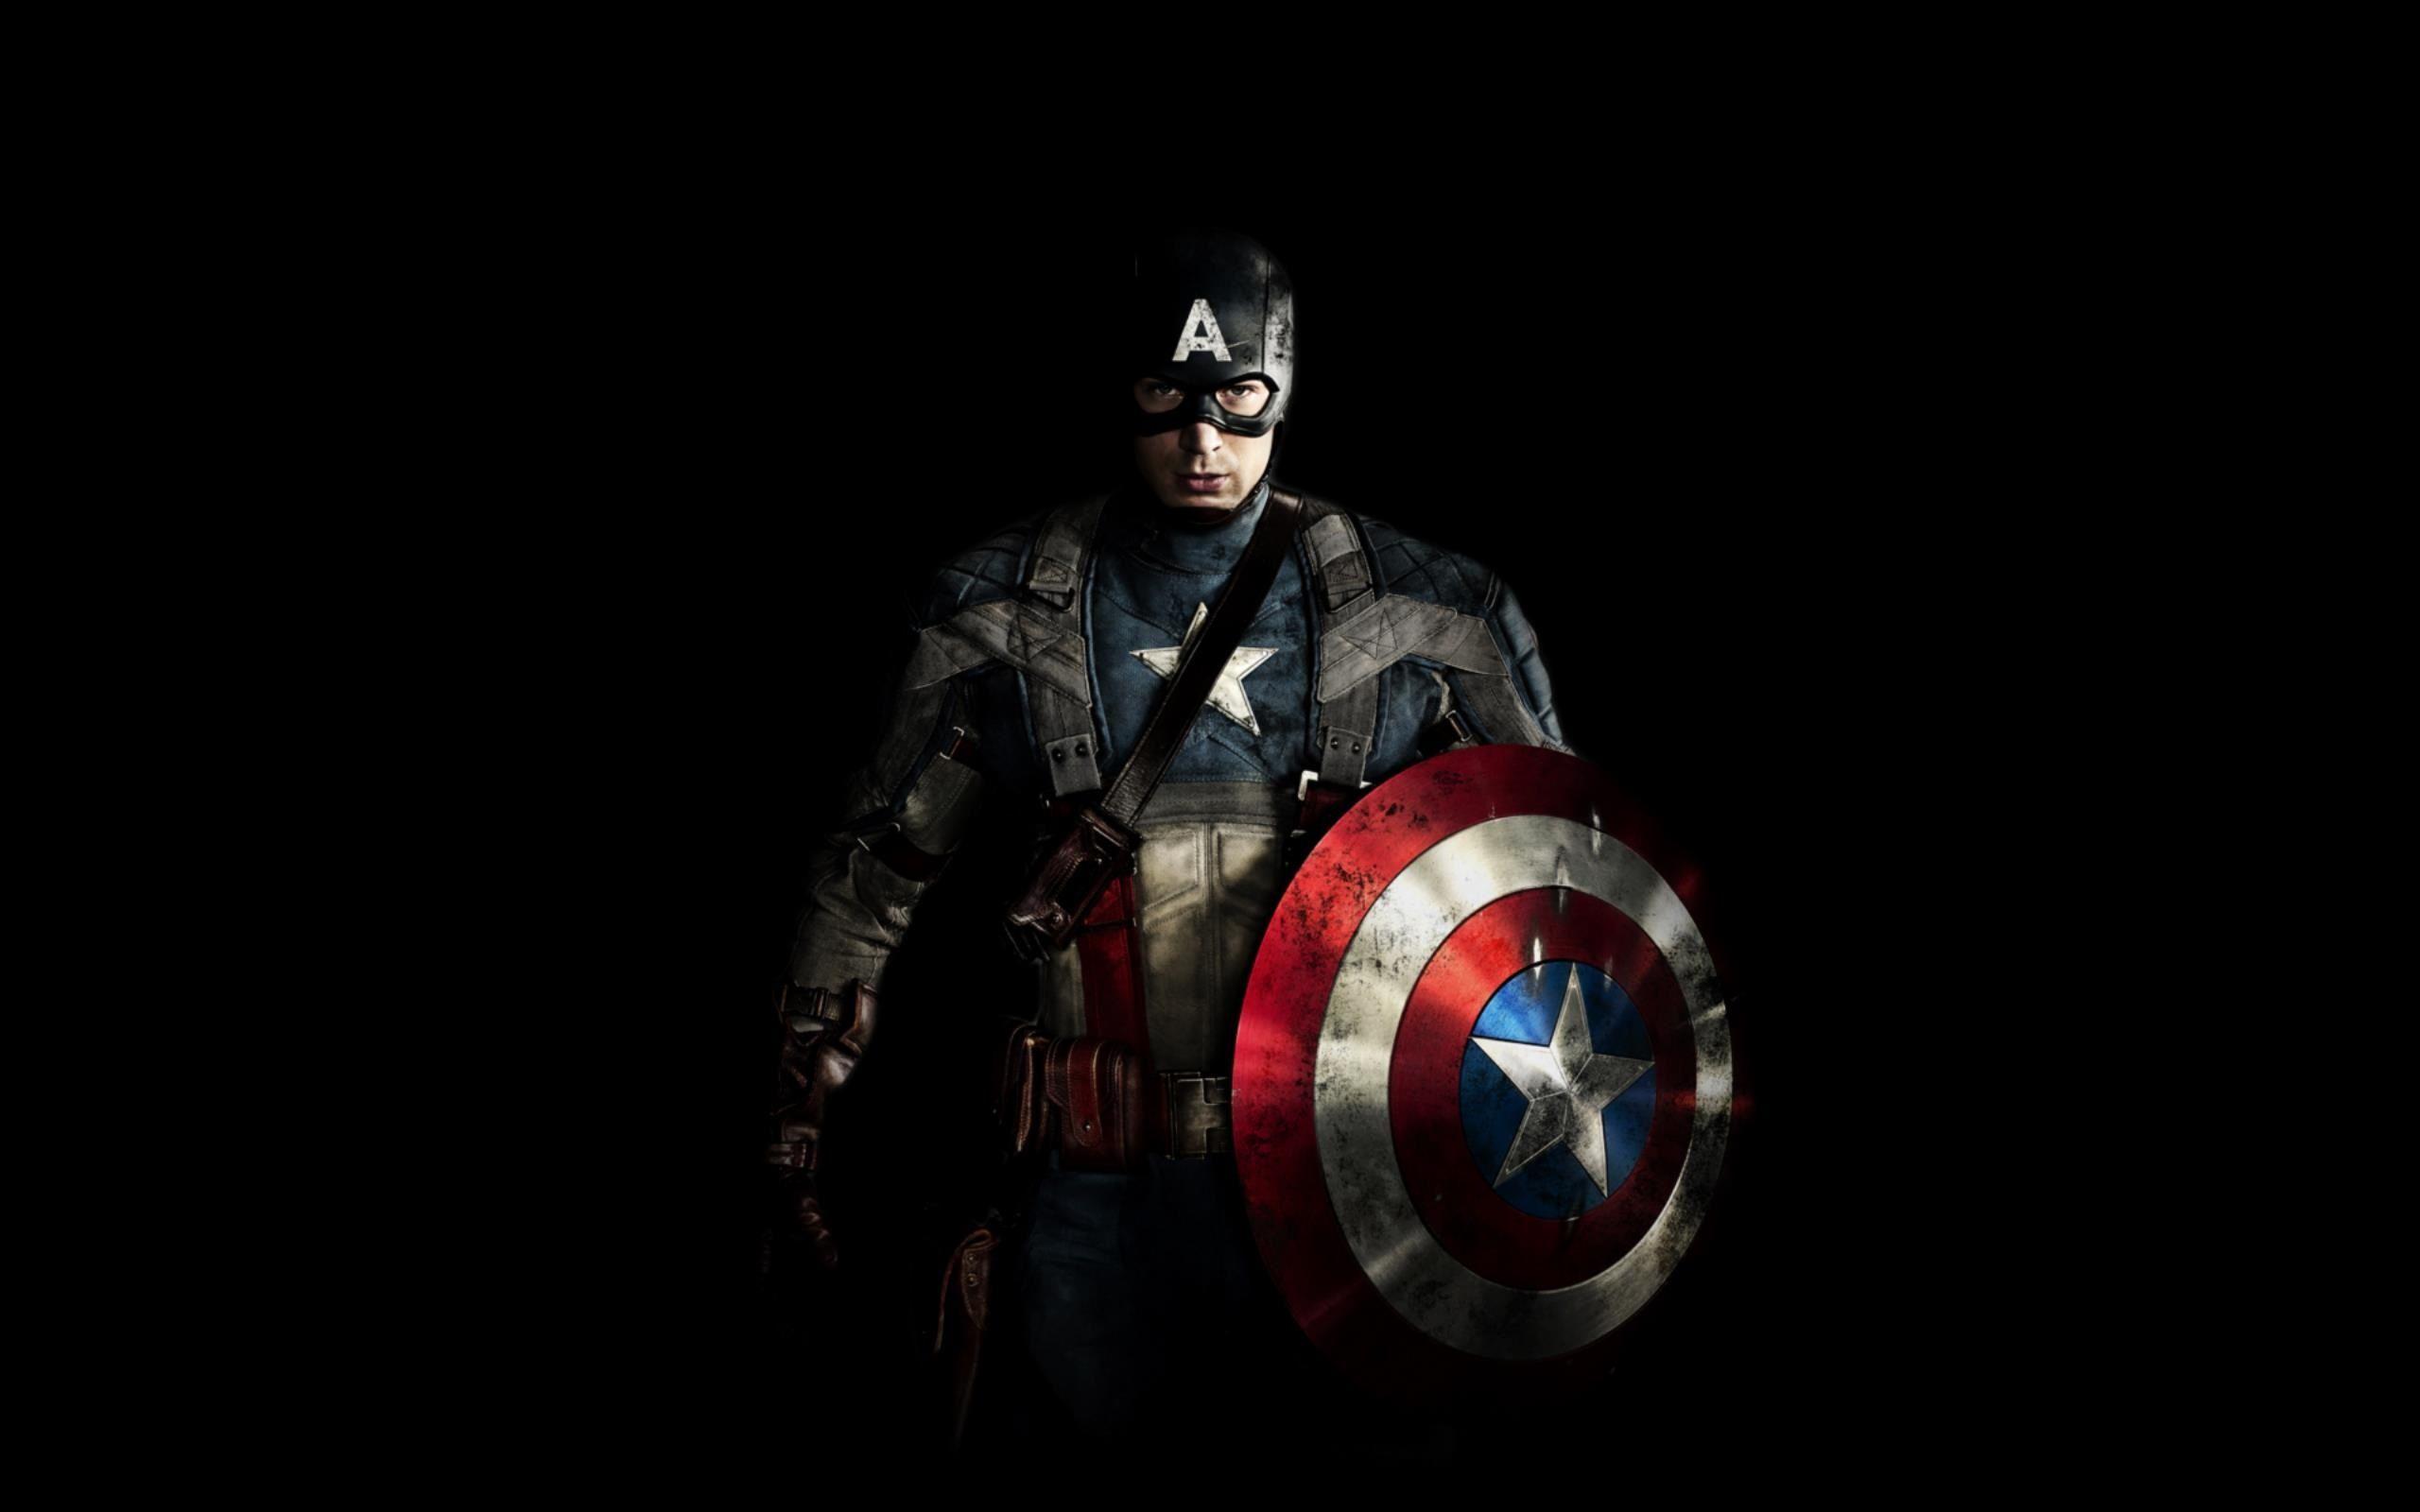 Captain America Full Hd Wallpapers Wallpaper Cave